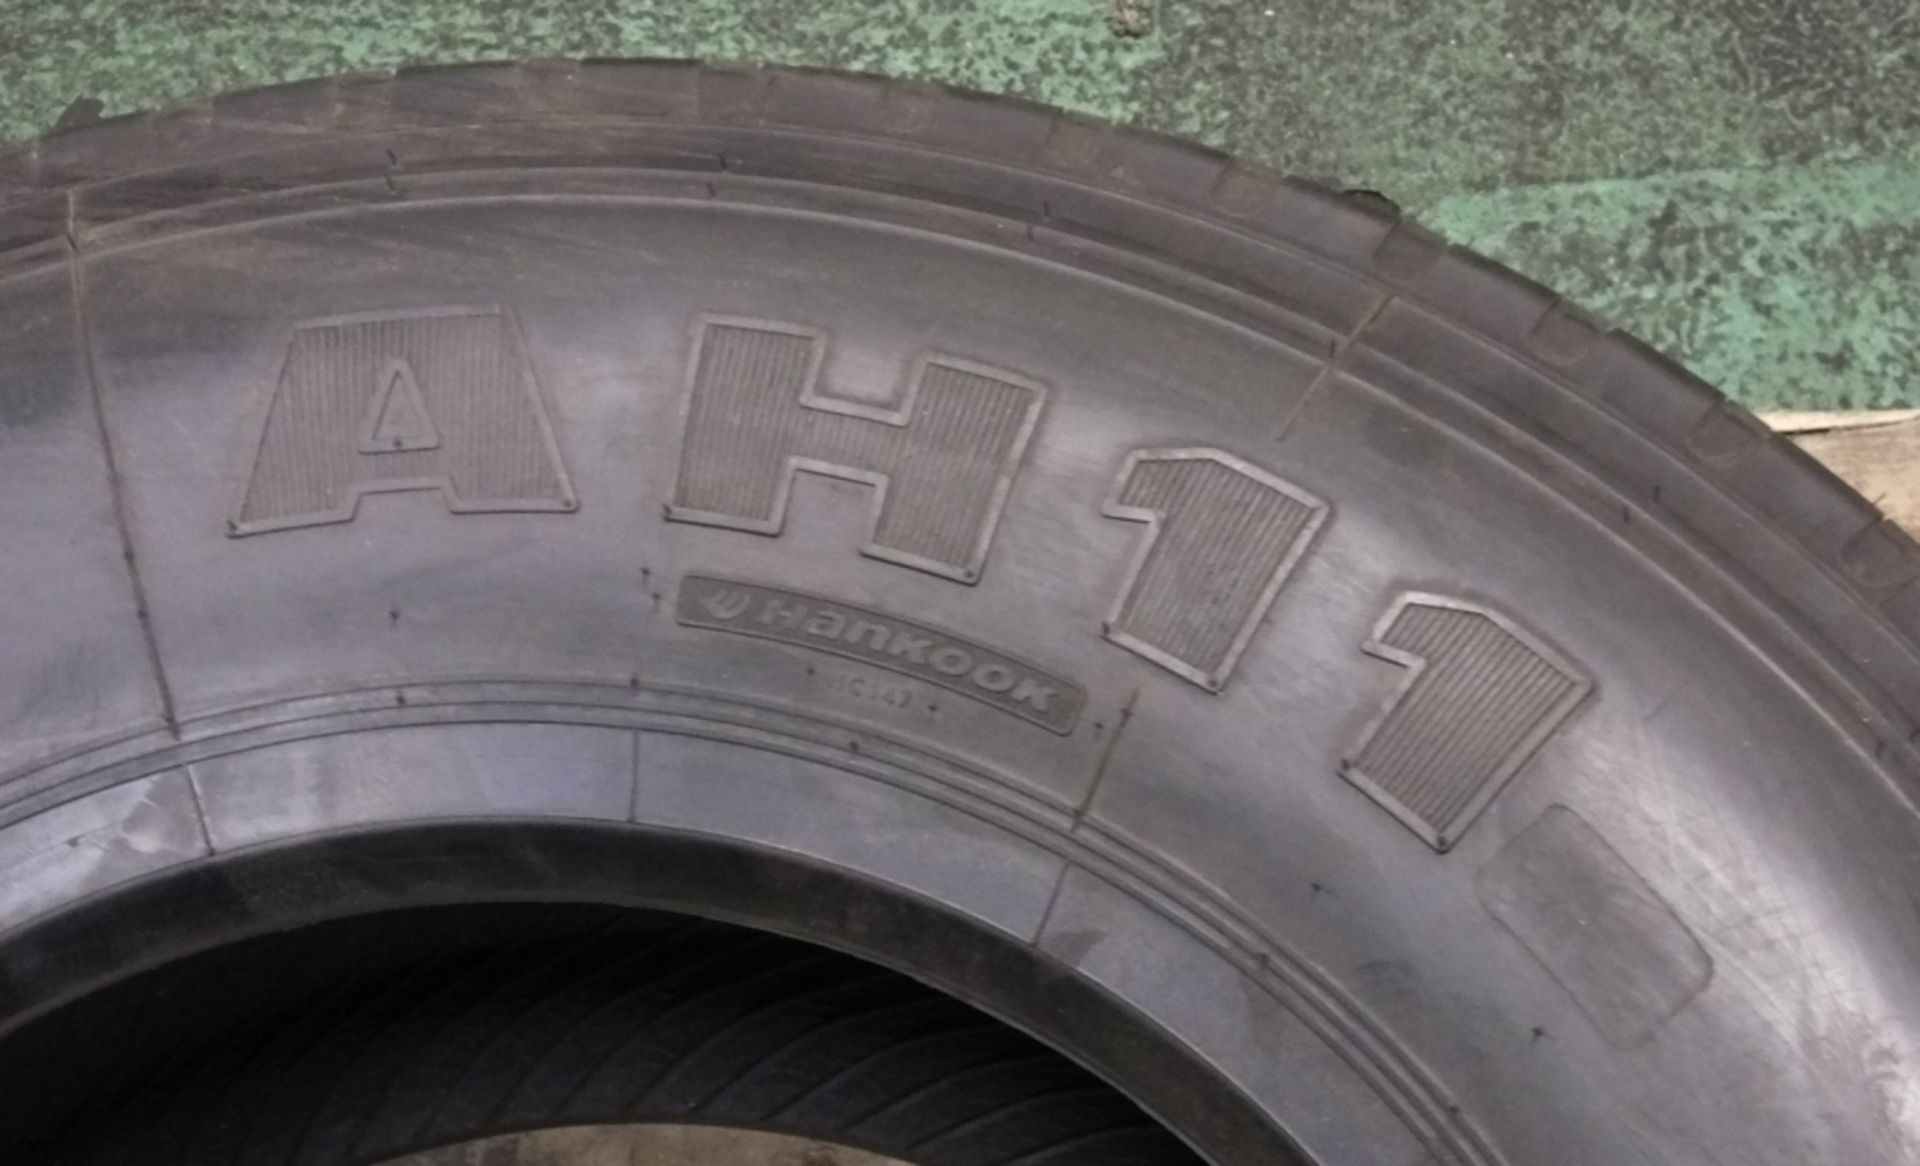 Hankook AH11 305/70R19.5 tyre (new & unused) - Image 4 of 7